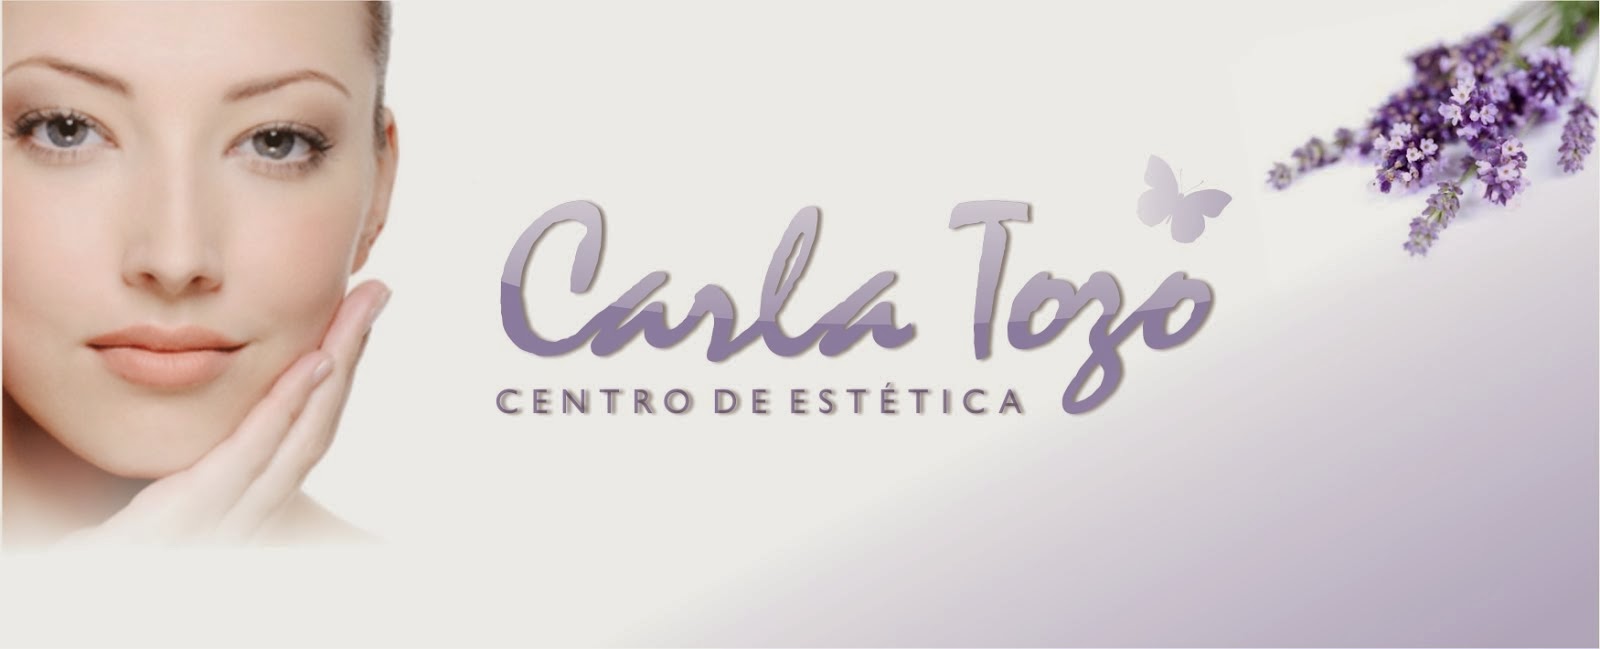 Centro de Estética Carla Tozo